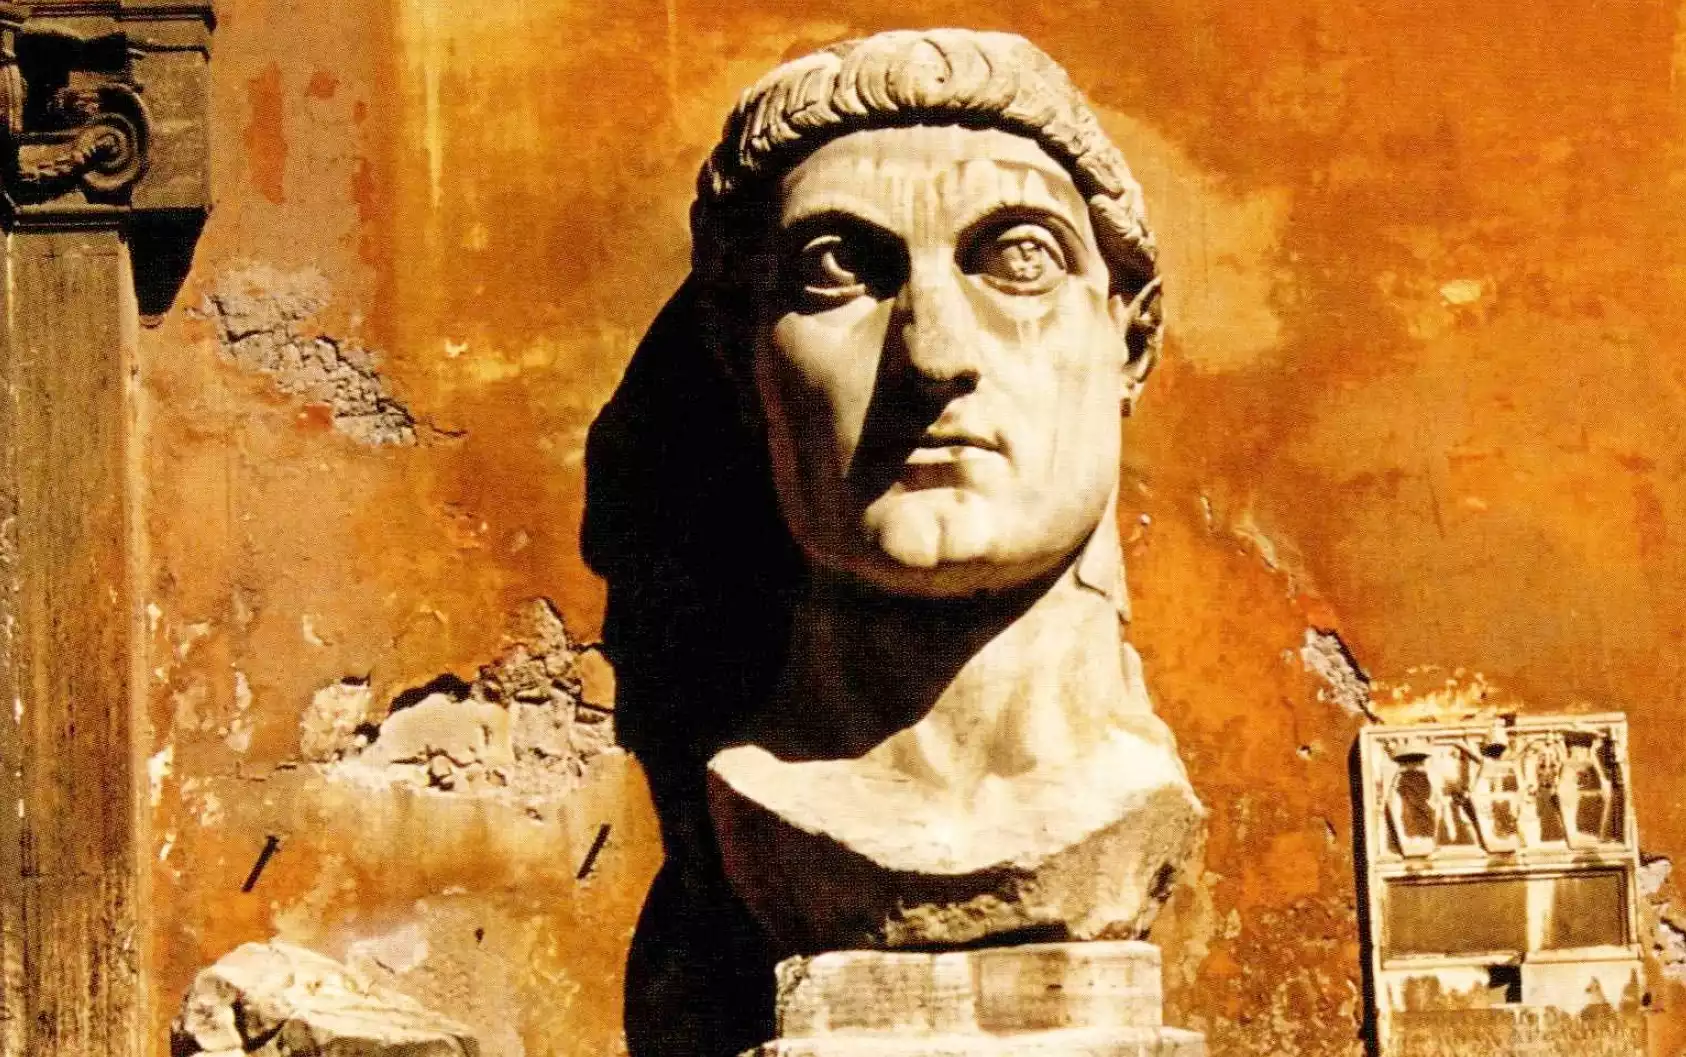 Κεφαλή αγάλματος του Ρωμαίου αυτοκράτορα Κωνσταντίνου, ο οποίος με το Διάταγμα των Μεδιολάνων άνοιξε το δρόμο για τη Βυζαντινή Εκκλησία.